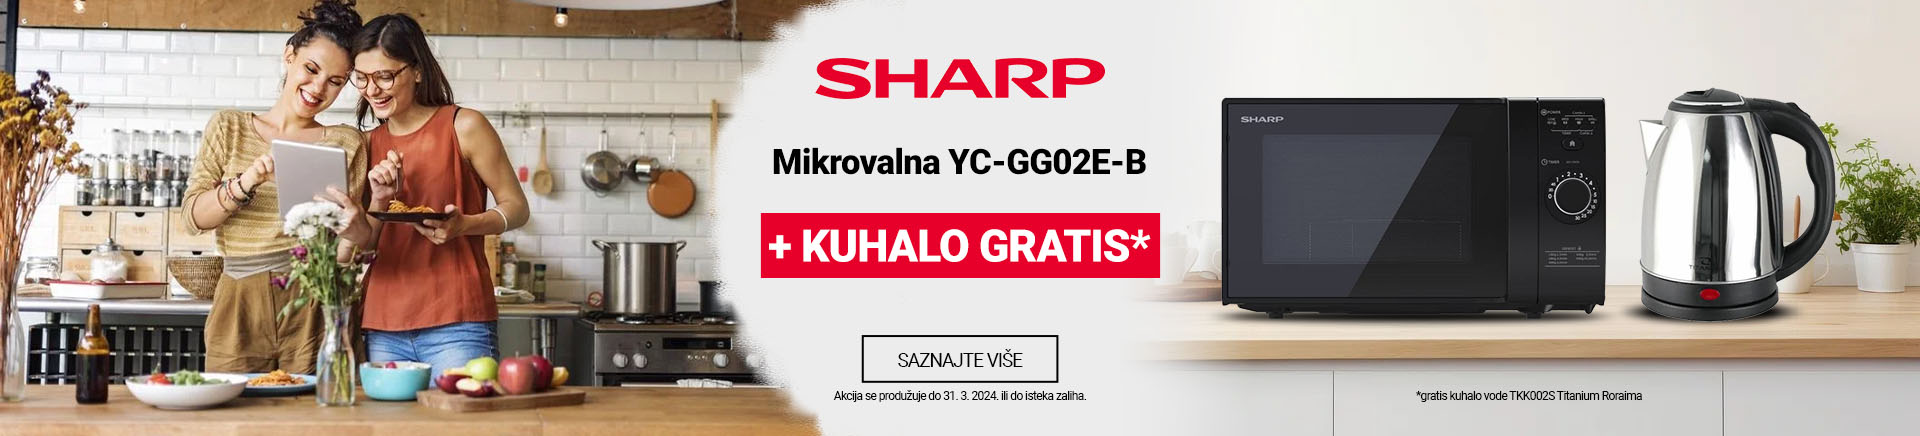 HR~Sharp mikrovalna YC-GG02E-B+Kuhalo GRATIS MOBILE 760x872.jpg